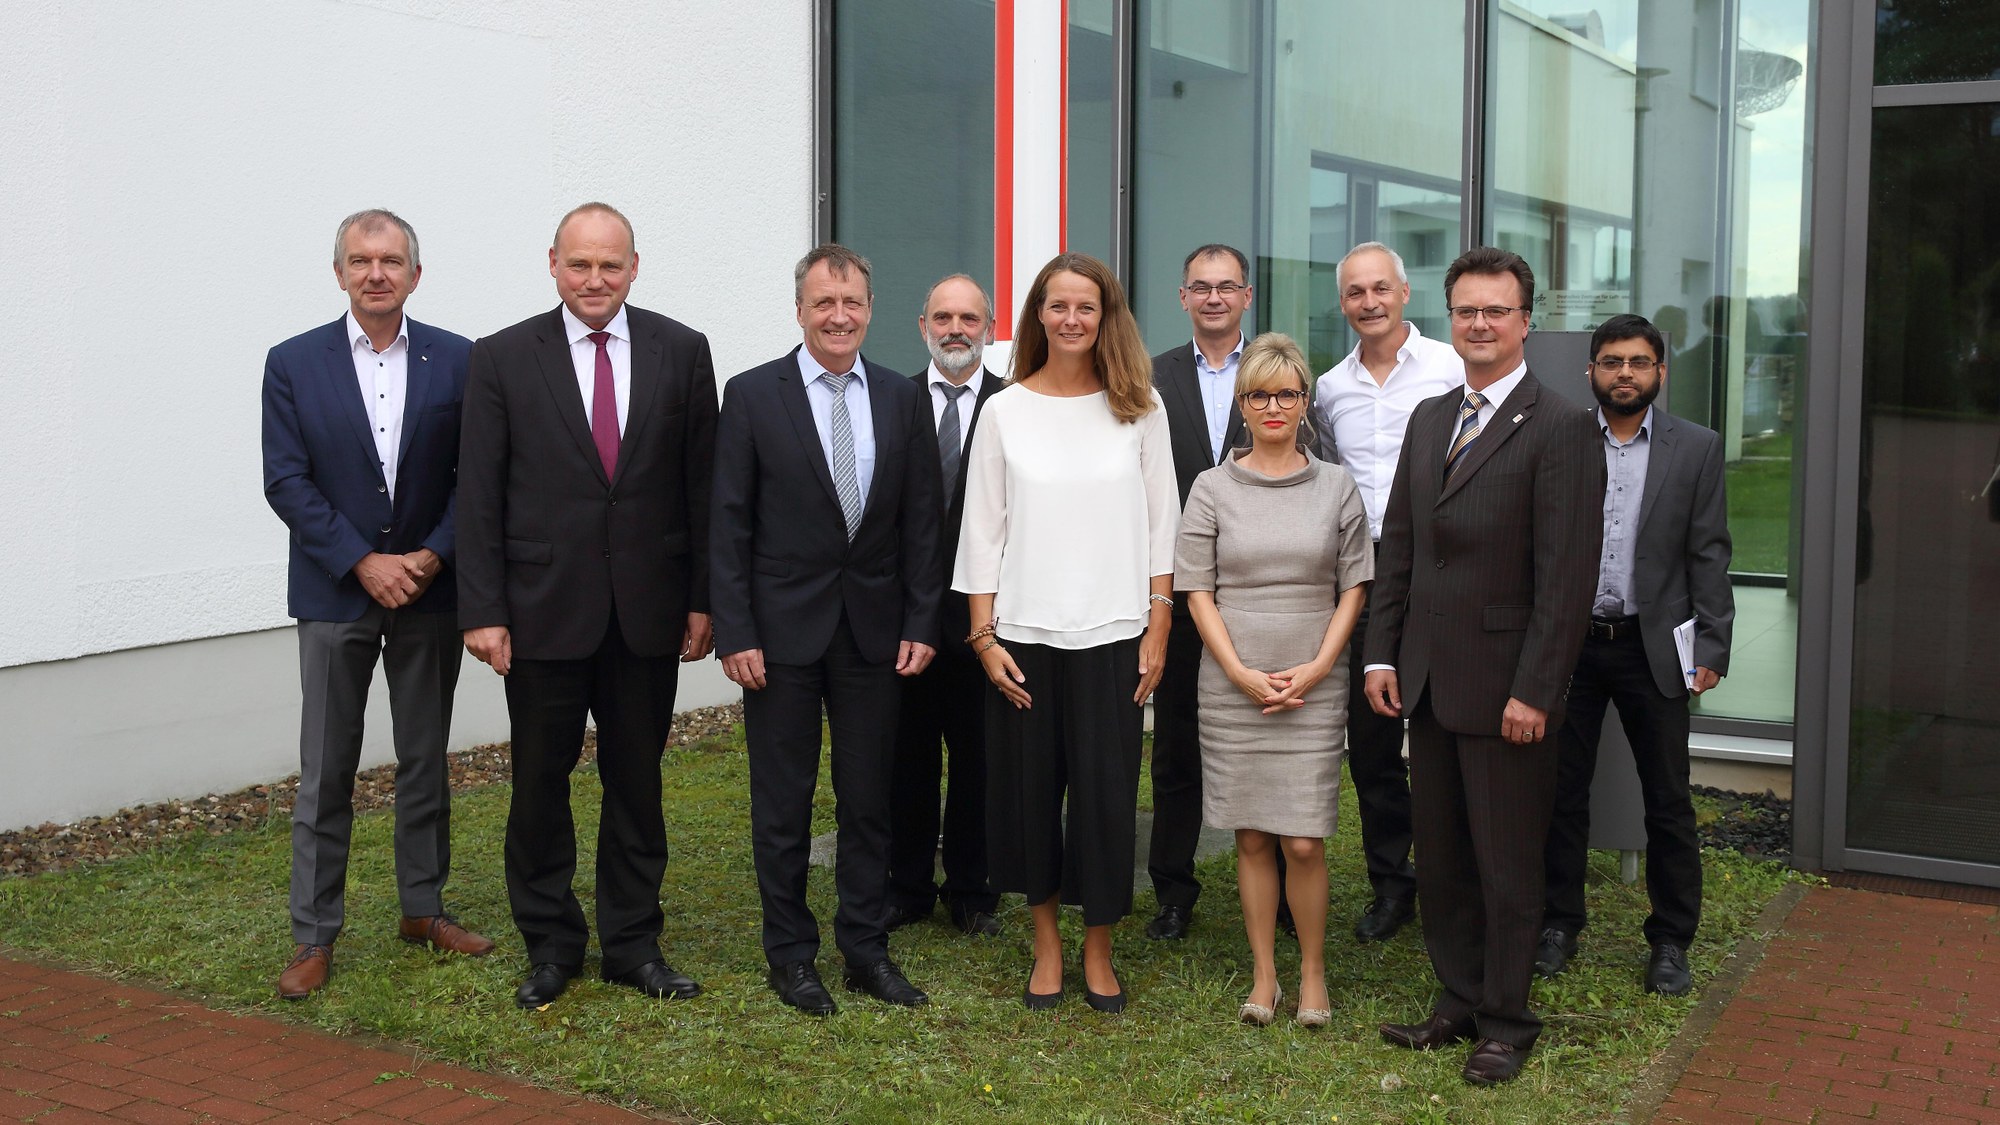 Gruppenfoto von Bildungsministerin Bettina Martins Besuch in Neustrelitz